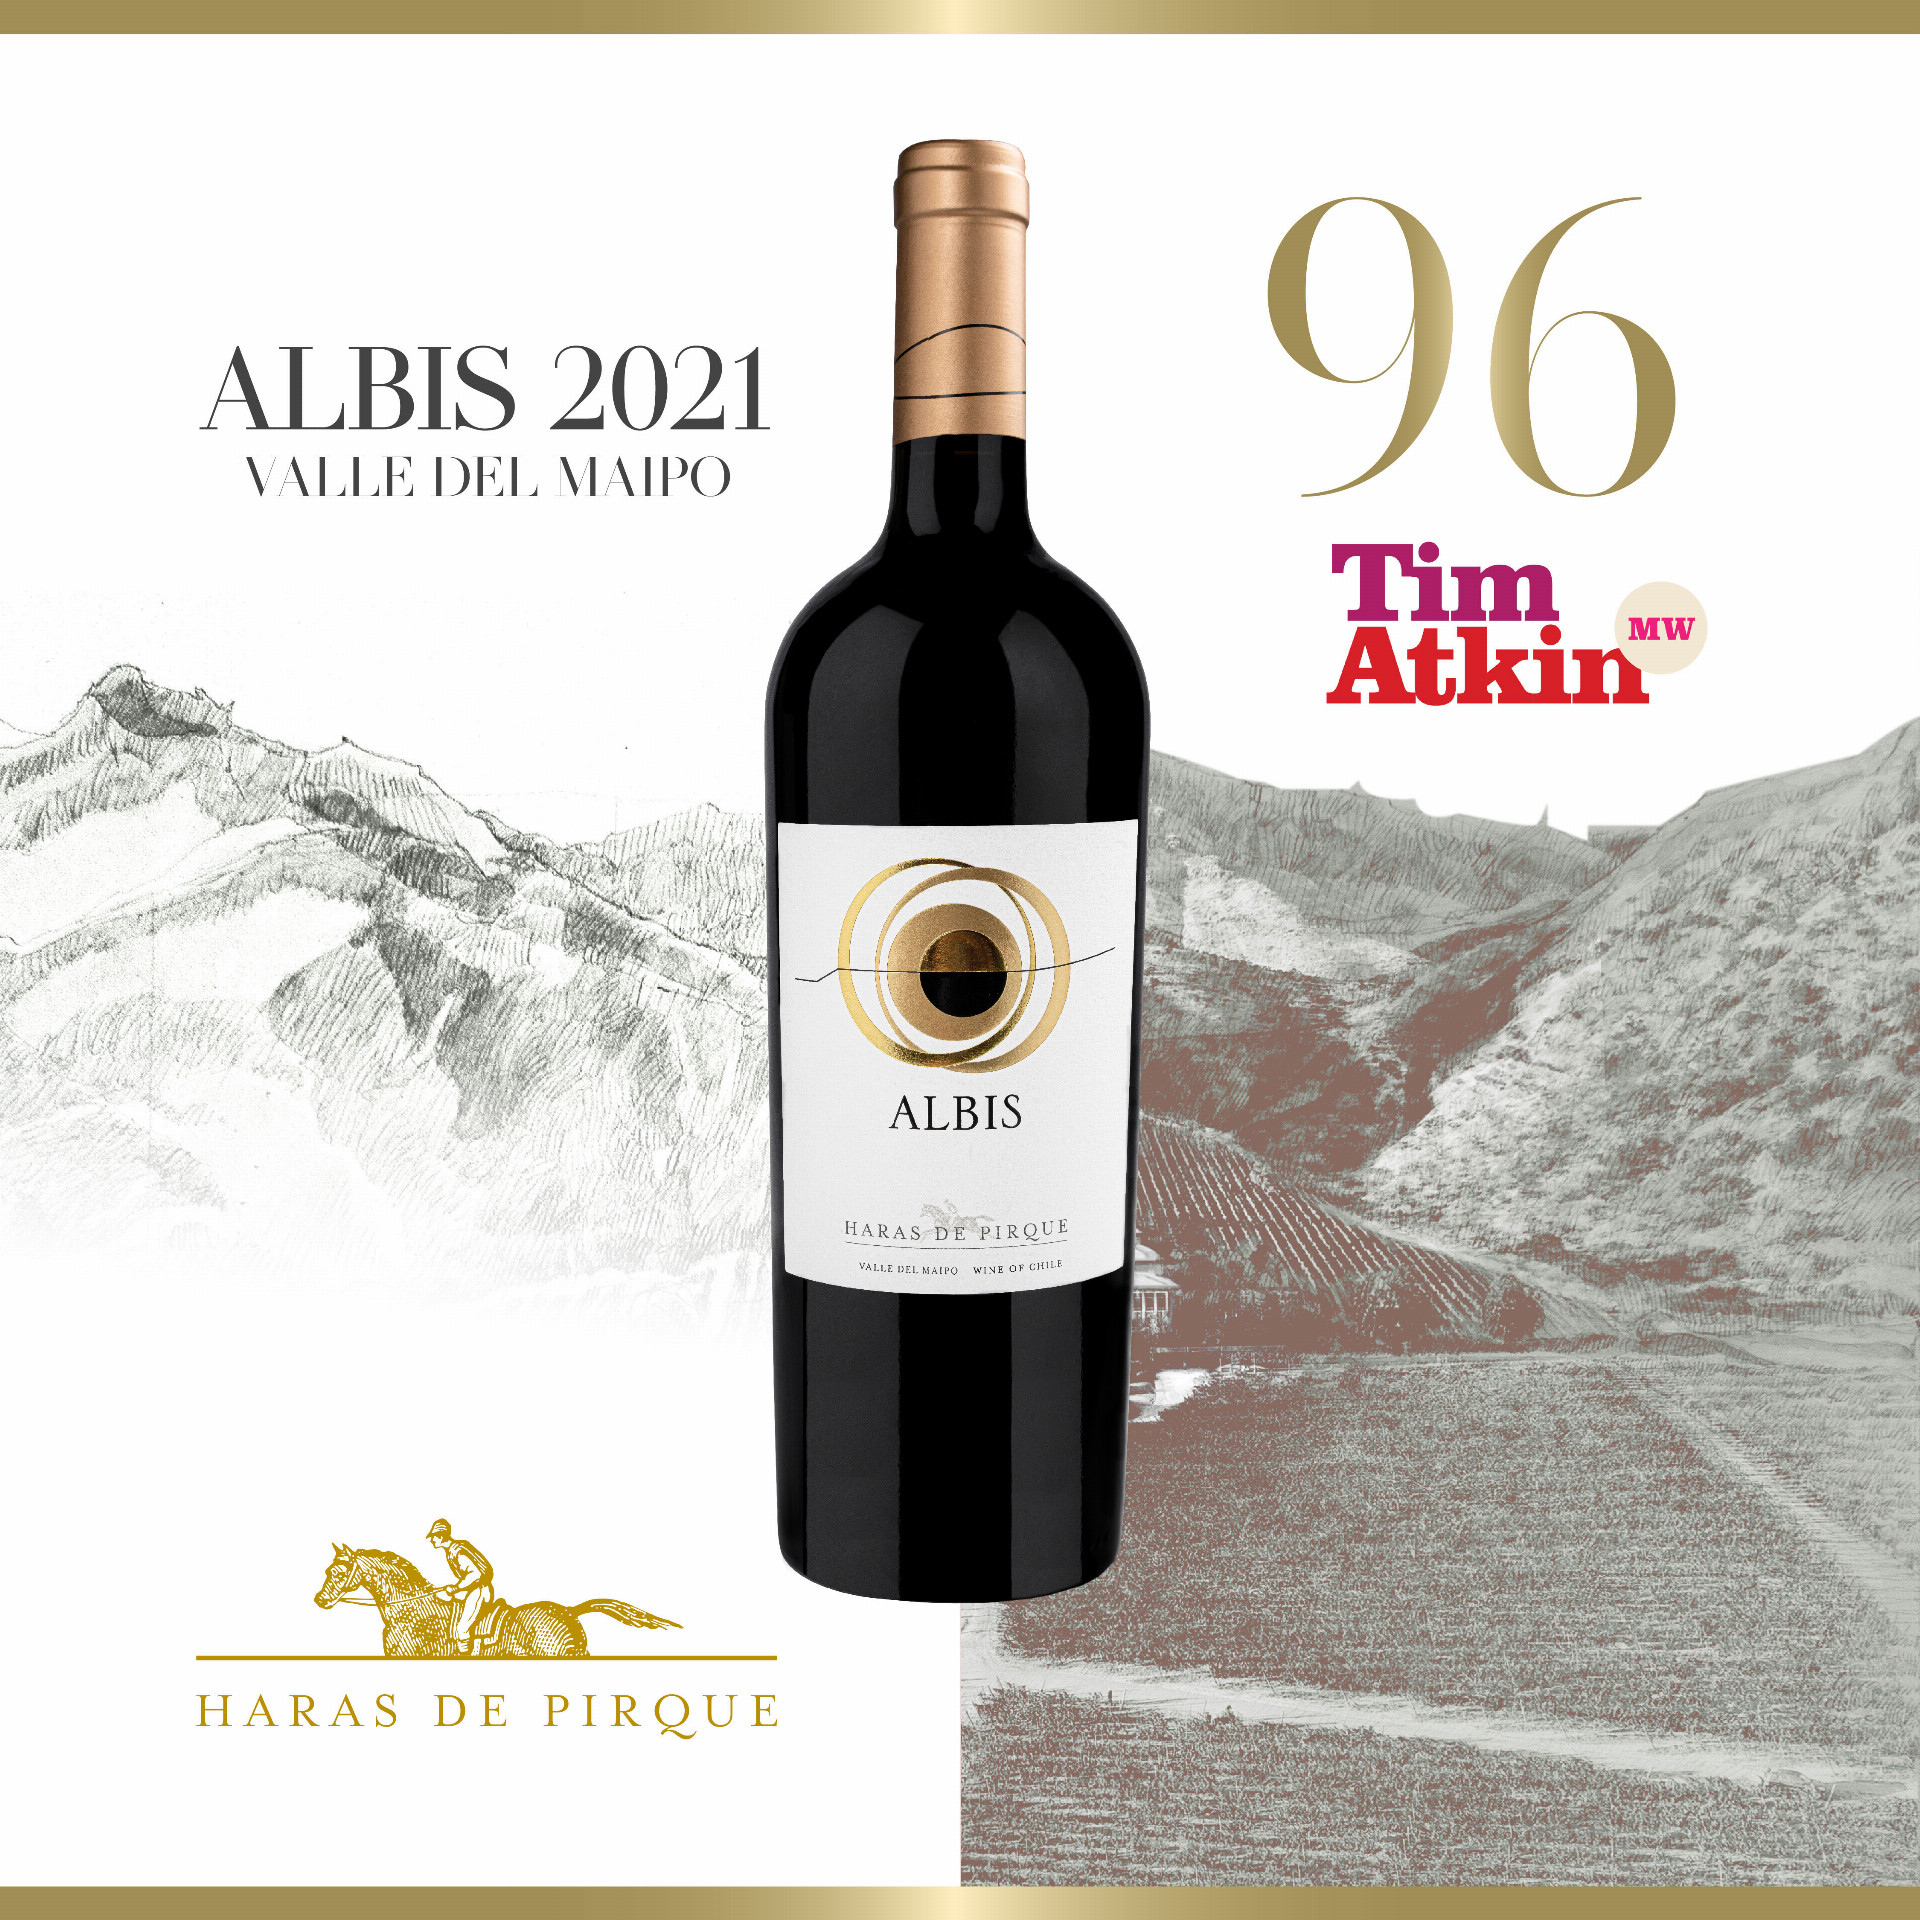 Hodnocení vín Haras de Pirque od Tim Atkin MW